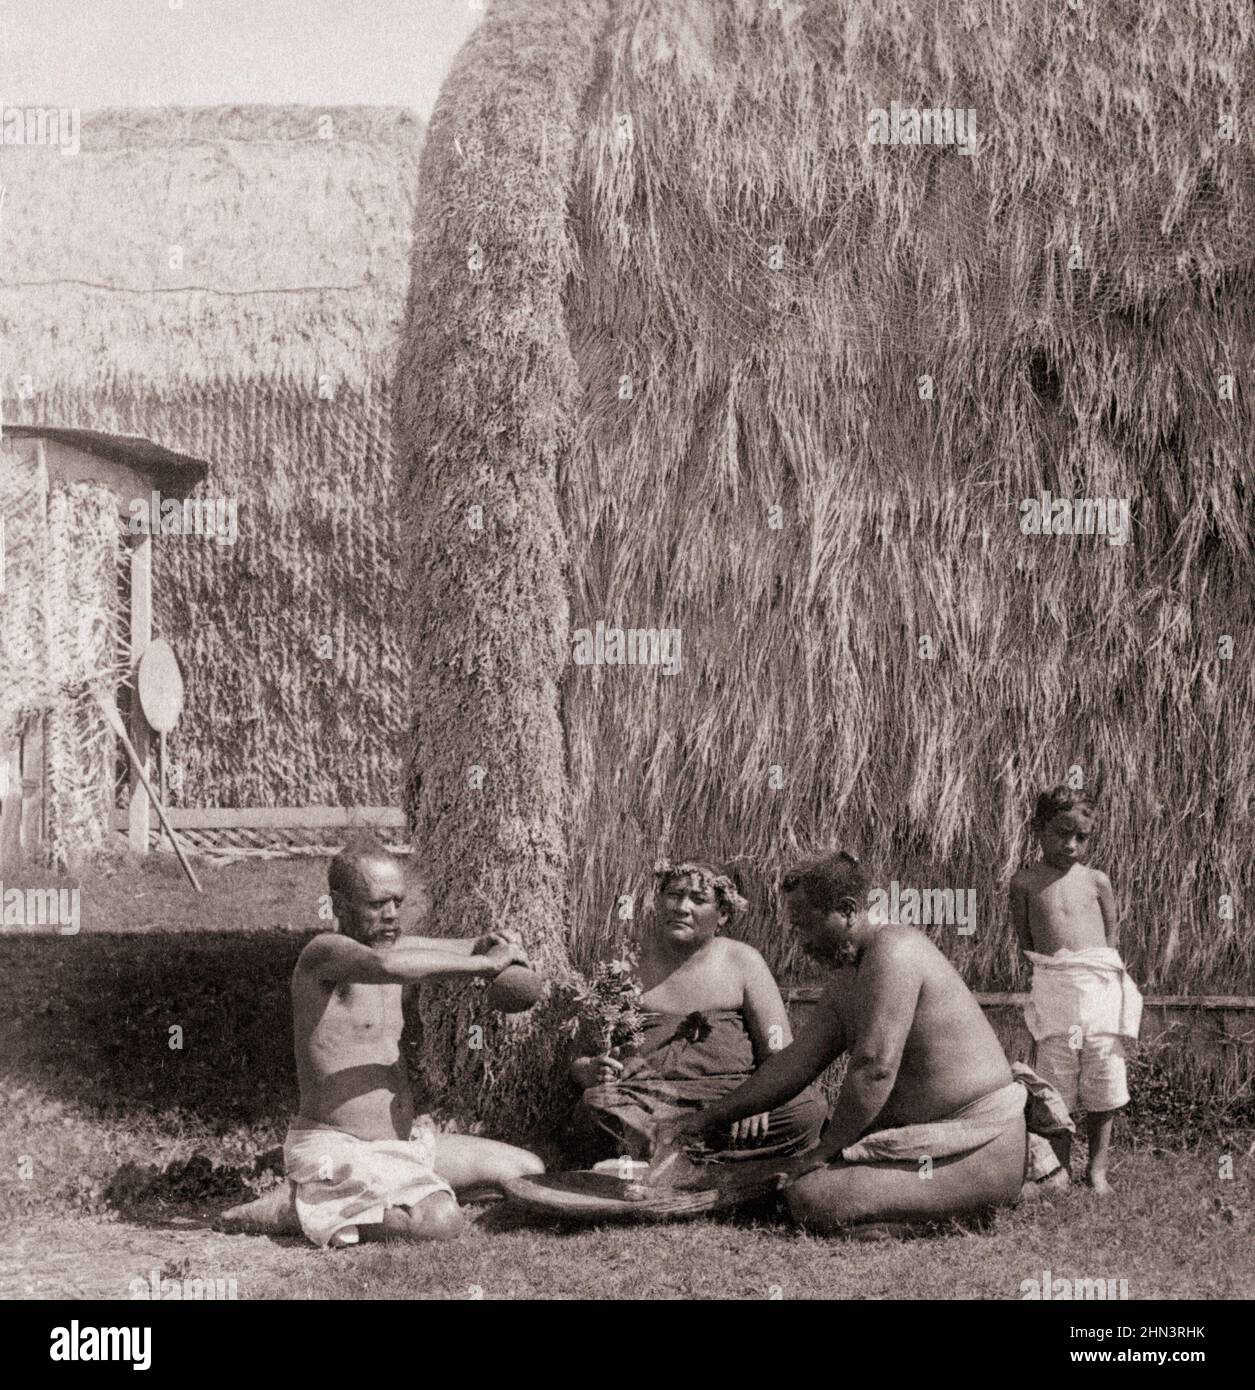 Foto vintage del grupo de nativos Kanaka Maoli comiendo poi, islas hawaianas (frente a la cabaña de césped). 1896 Los nativos hawaianos son la Polinesia Indígena Foto de stock